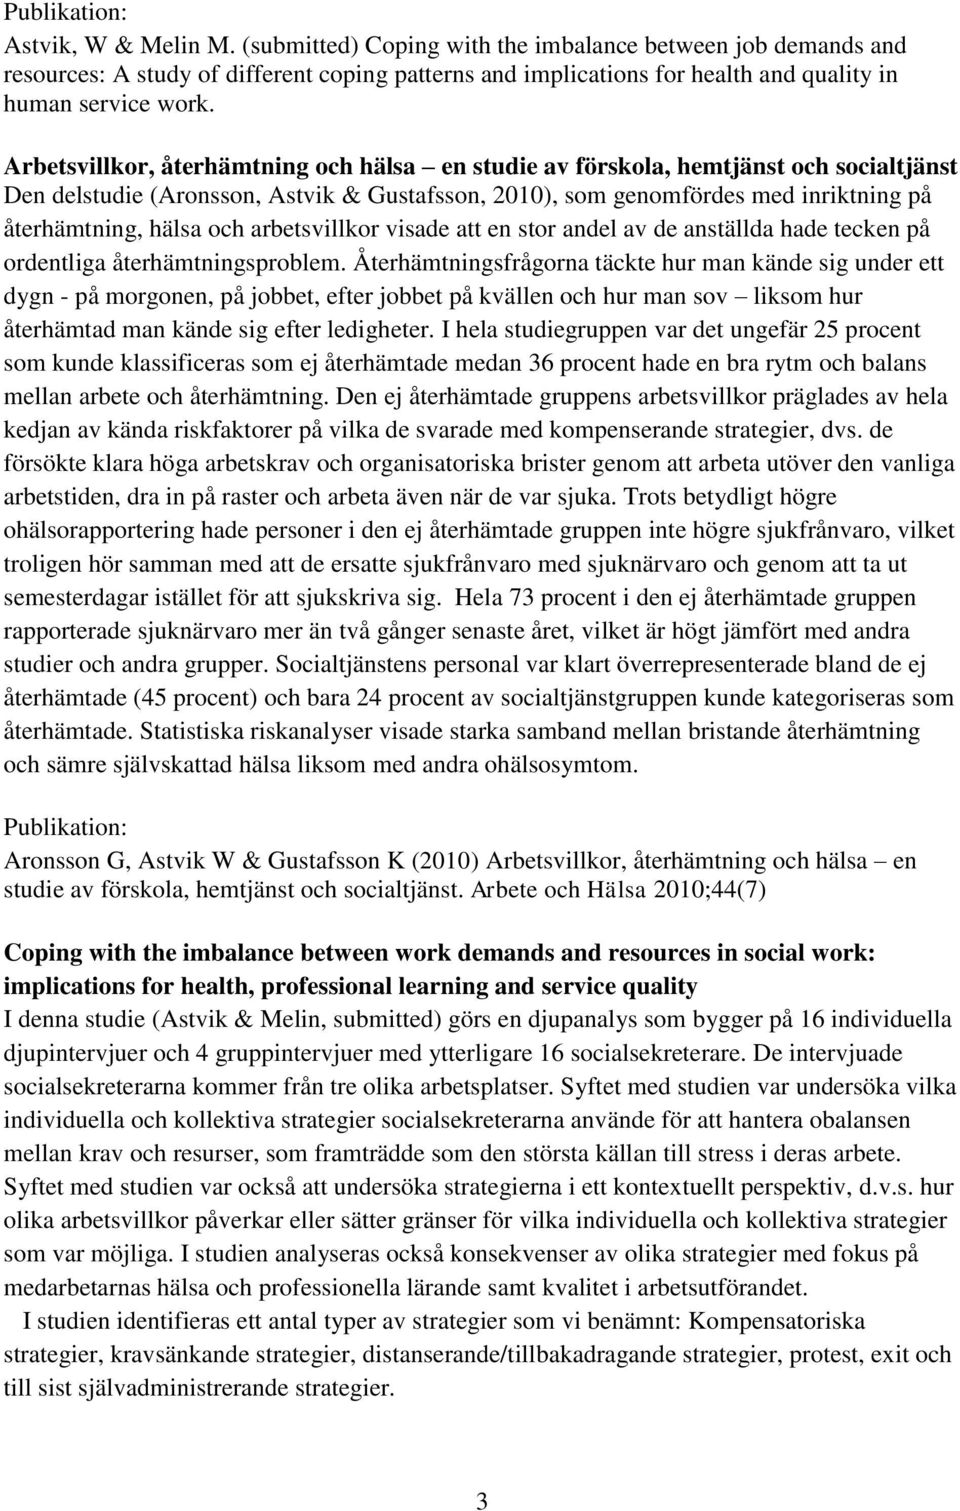 Arbetsvillkor, återhämtning och hälsa en studie av förskola, hemtjänst och socialtjänst Den delstudie (Aronsson, Astvik & Gustafsson, 2010), som genomfördes med inriktning på återhämtning, hälsa och